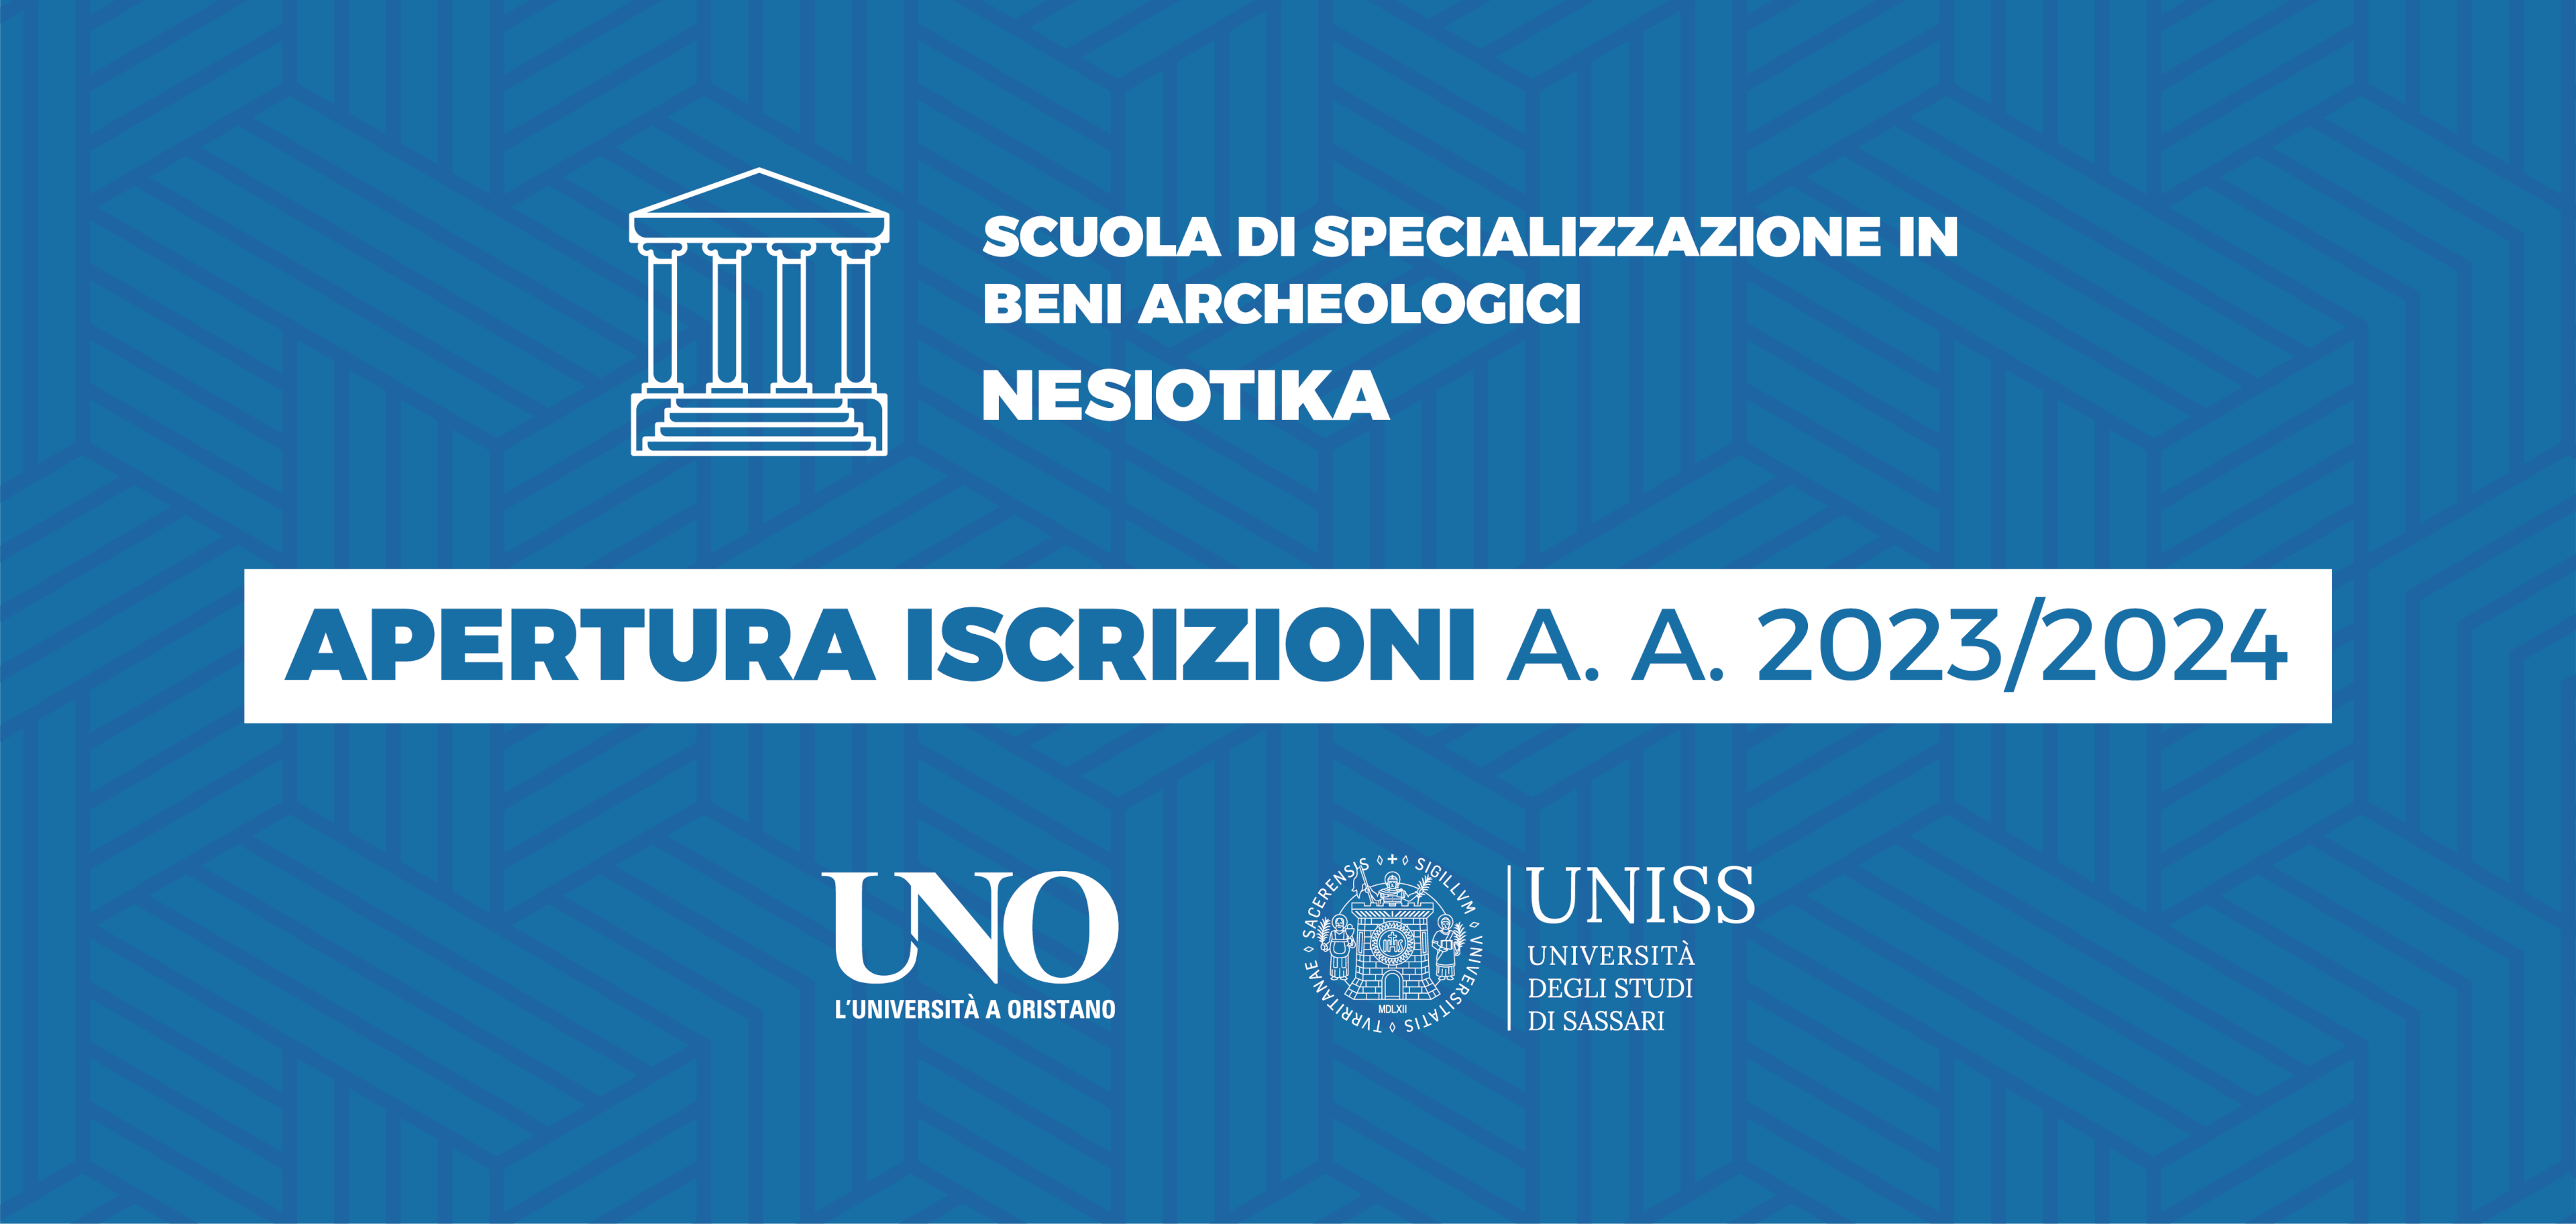 Pubblicato il bando per l’ammissione alla Scuola di Specializzazione in Beni Archeologici 2023/2024